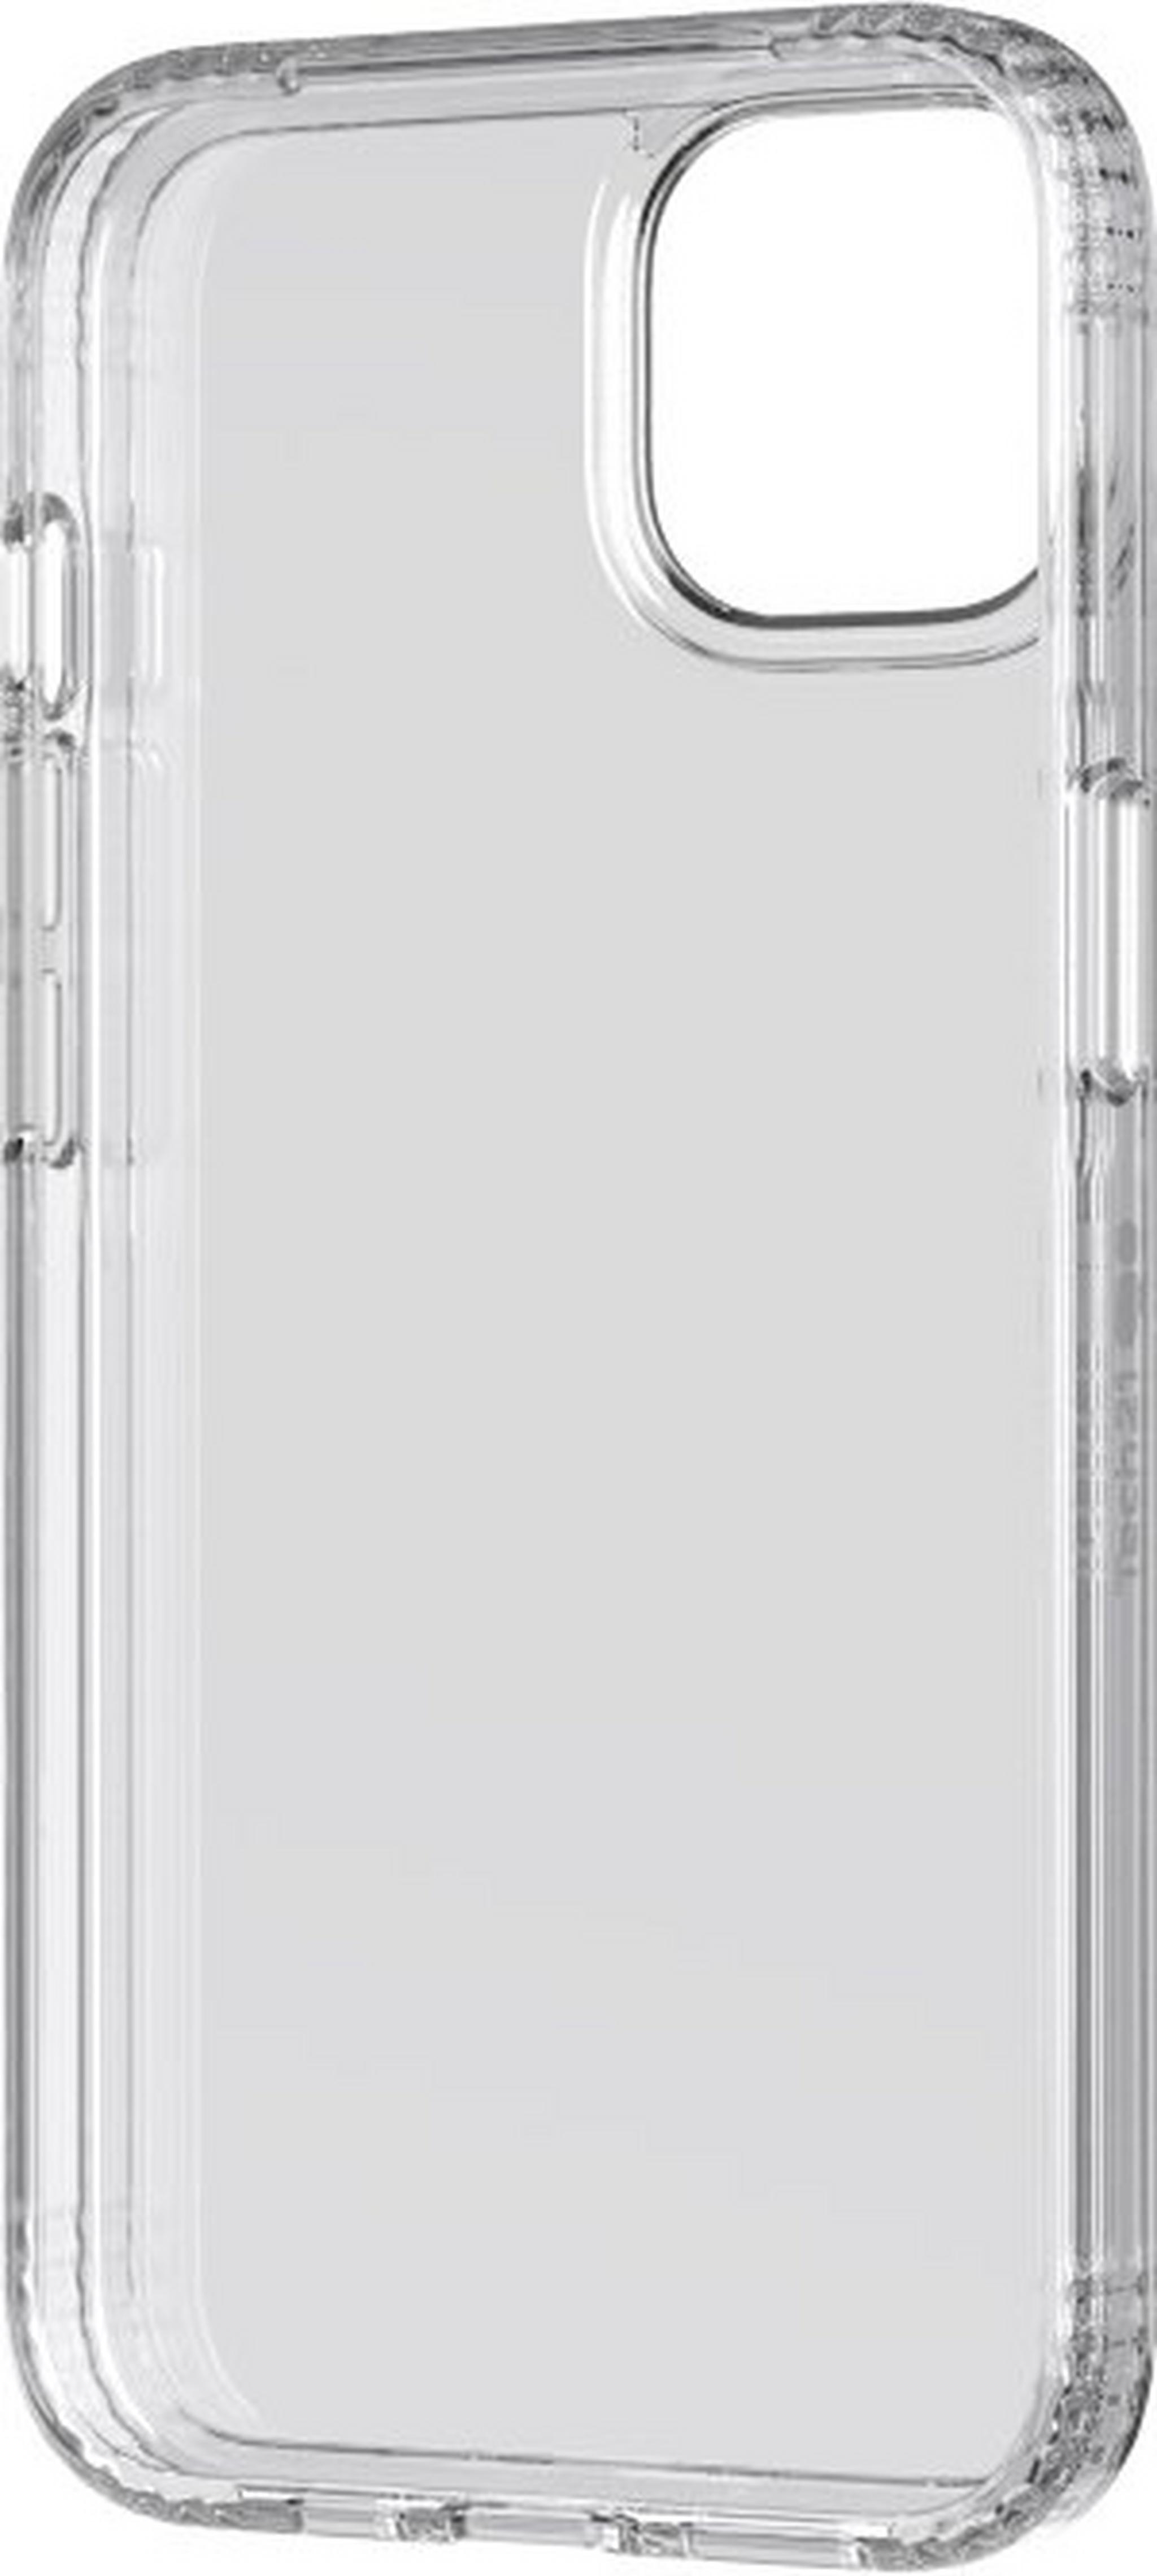 غطاء حماية ايفو كلير لابل ايفون 13 من تيك21 - شفاف